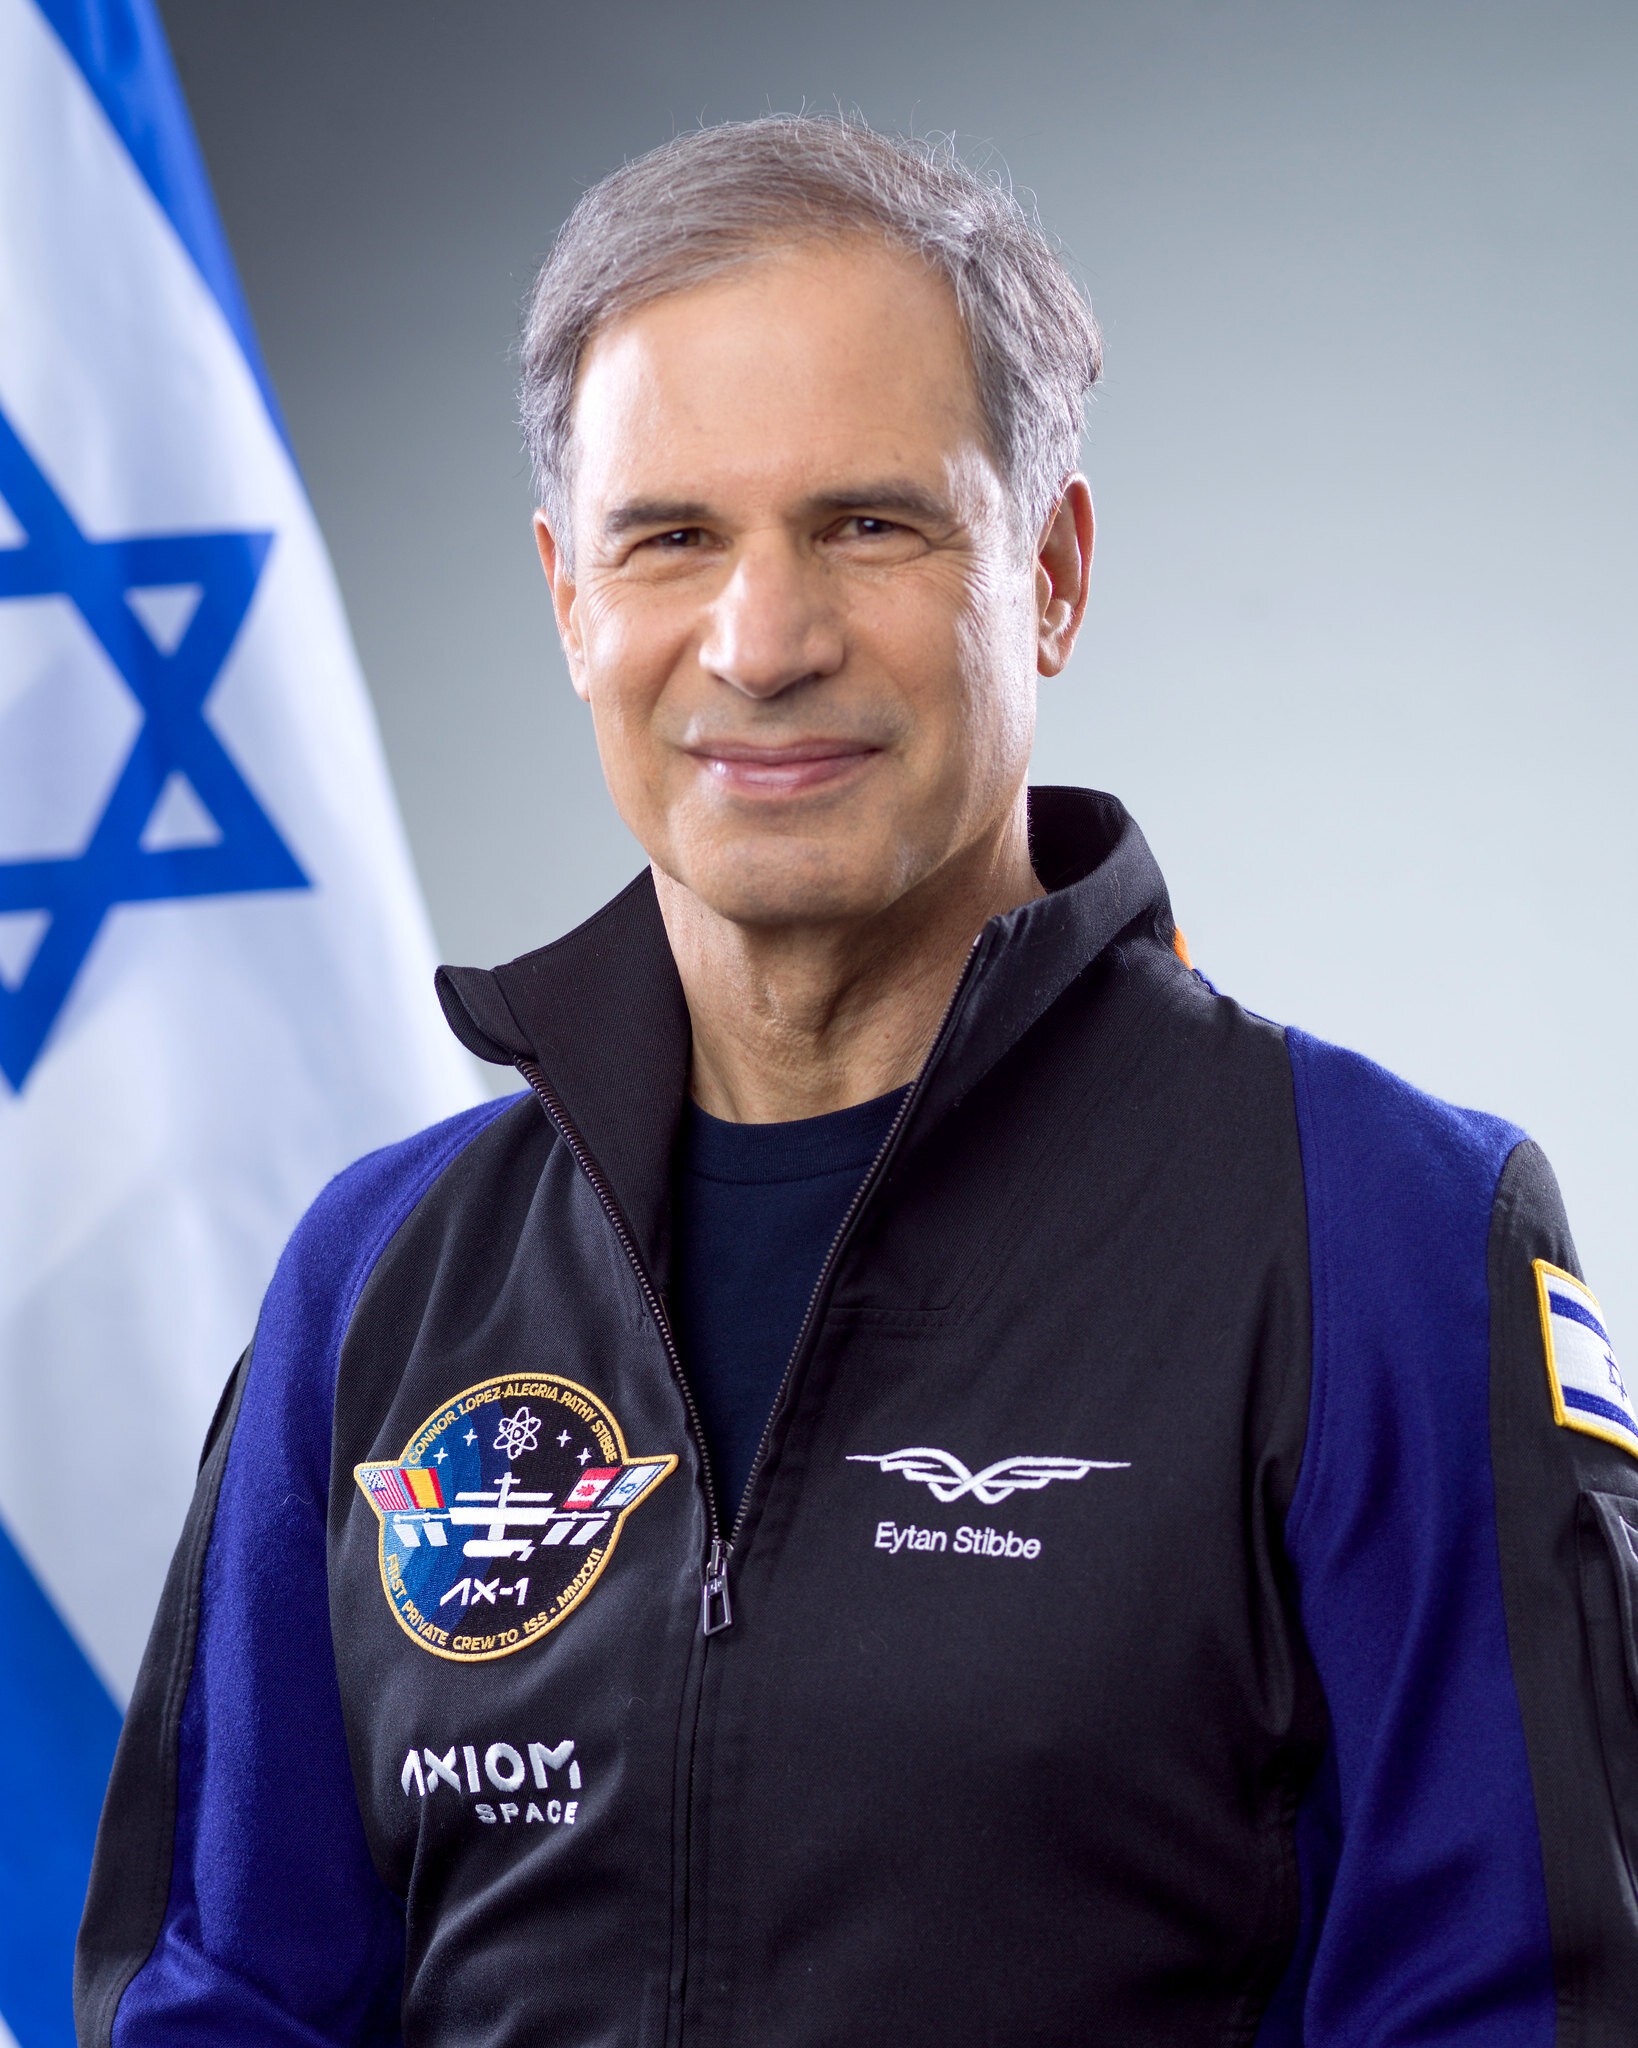 Eytan Stibbe já serviu como piloto de caça na Força Aérea de Israel  (Foto: Axiom Space)